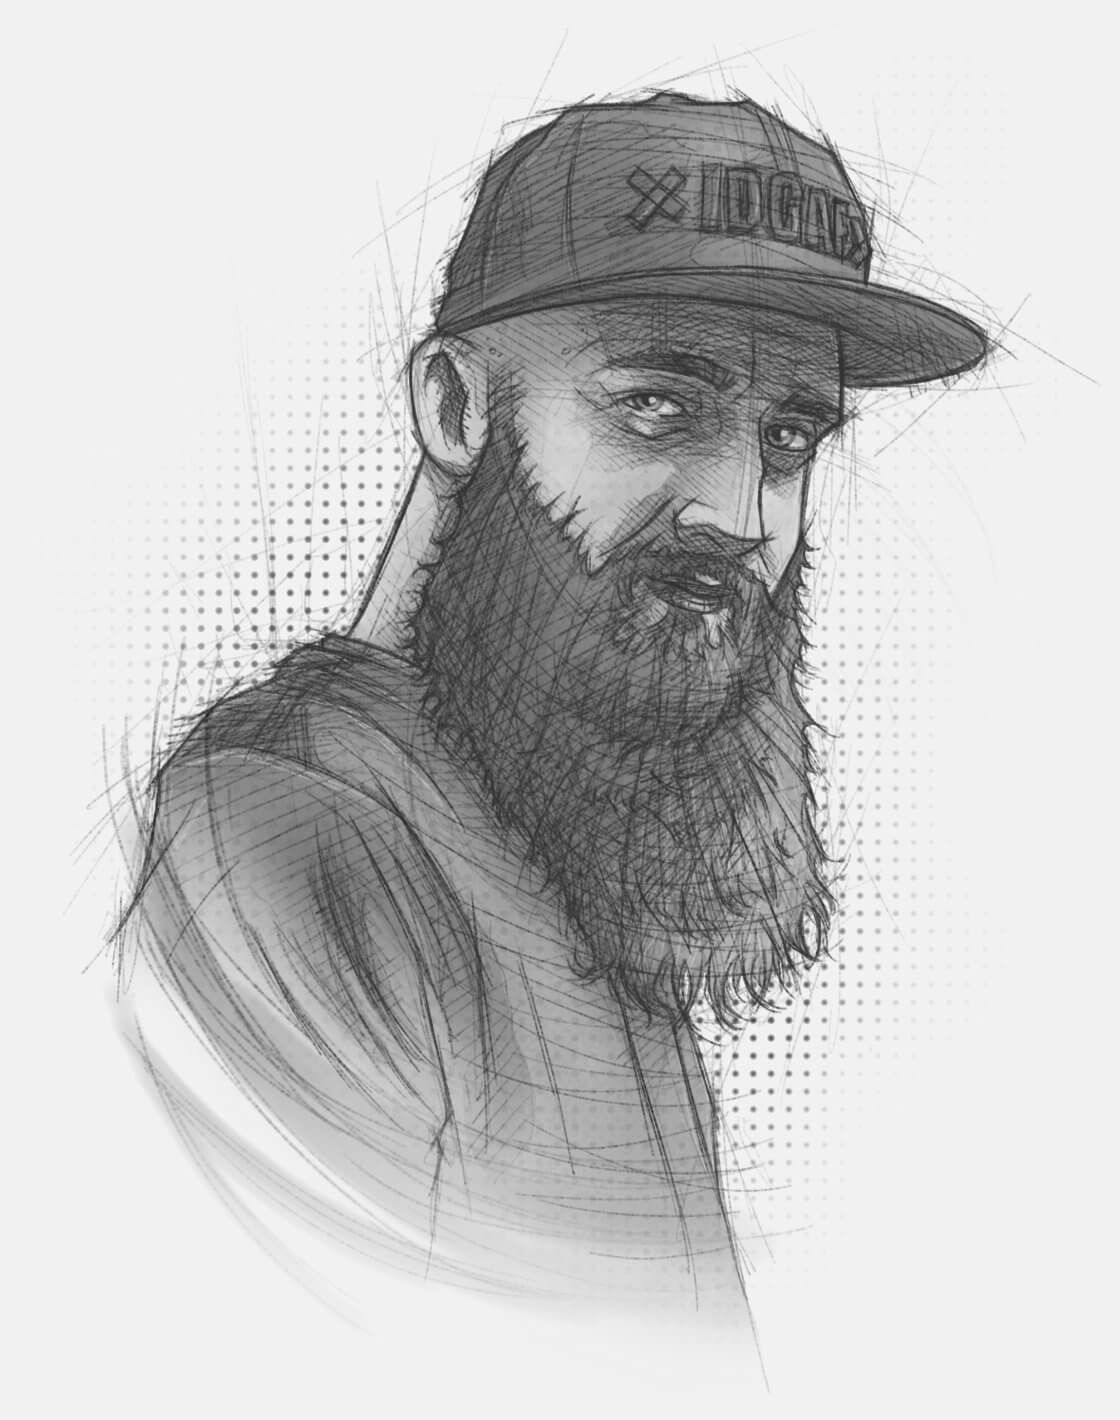 Eine skizzenhafte Portrait-Illustration, die einen Mann mit einem langen Bart und Cap zeigt